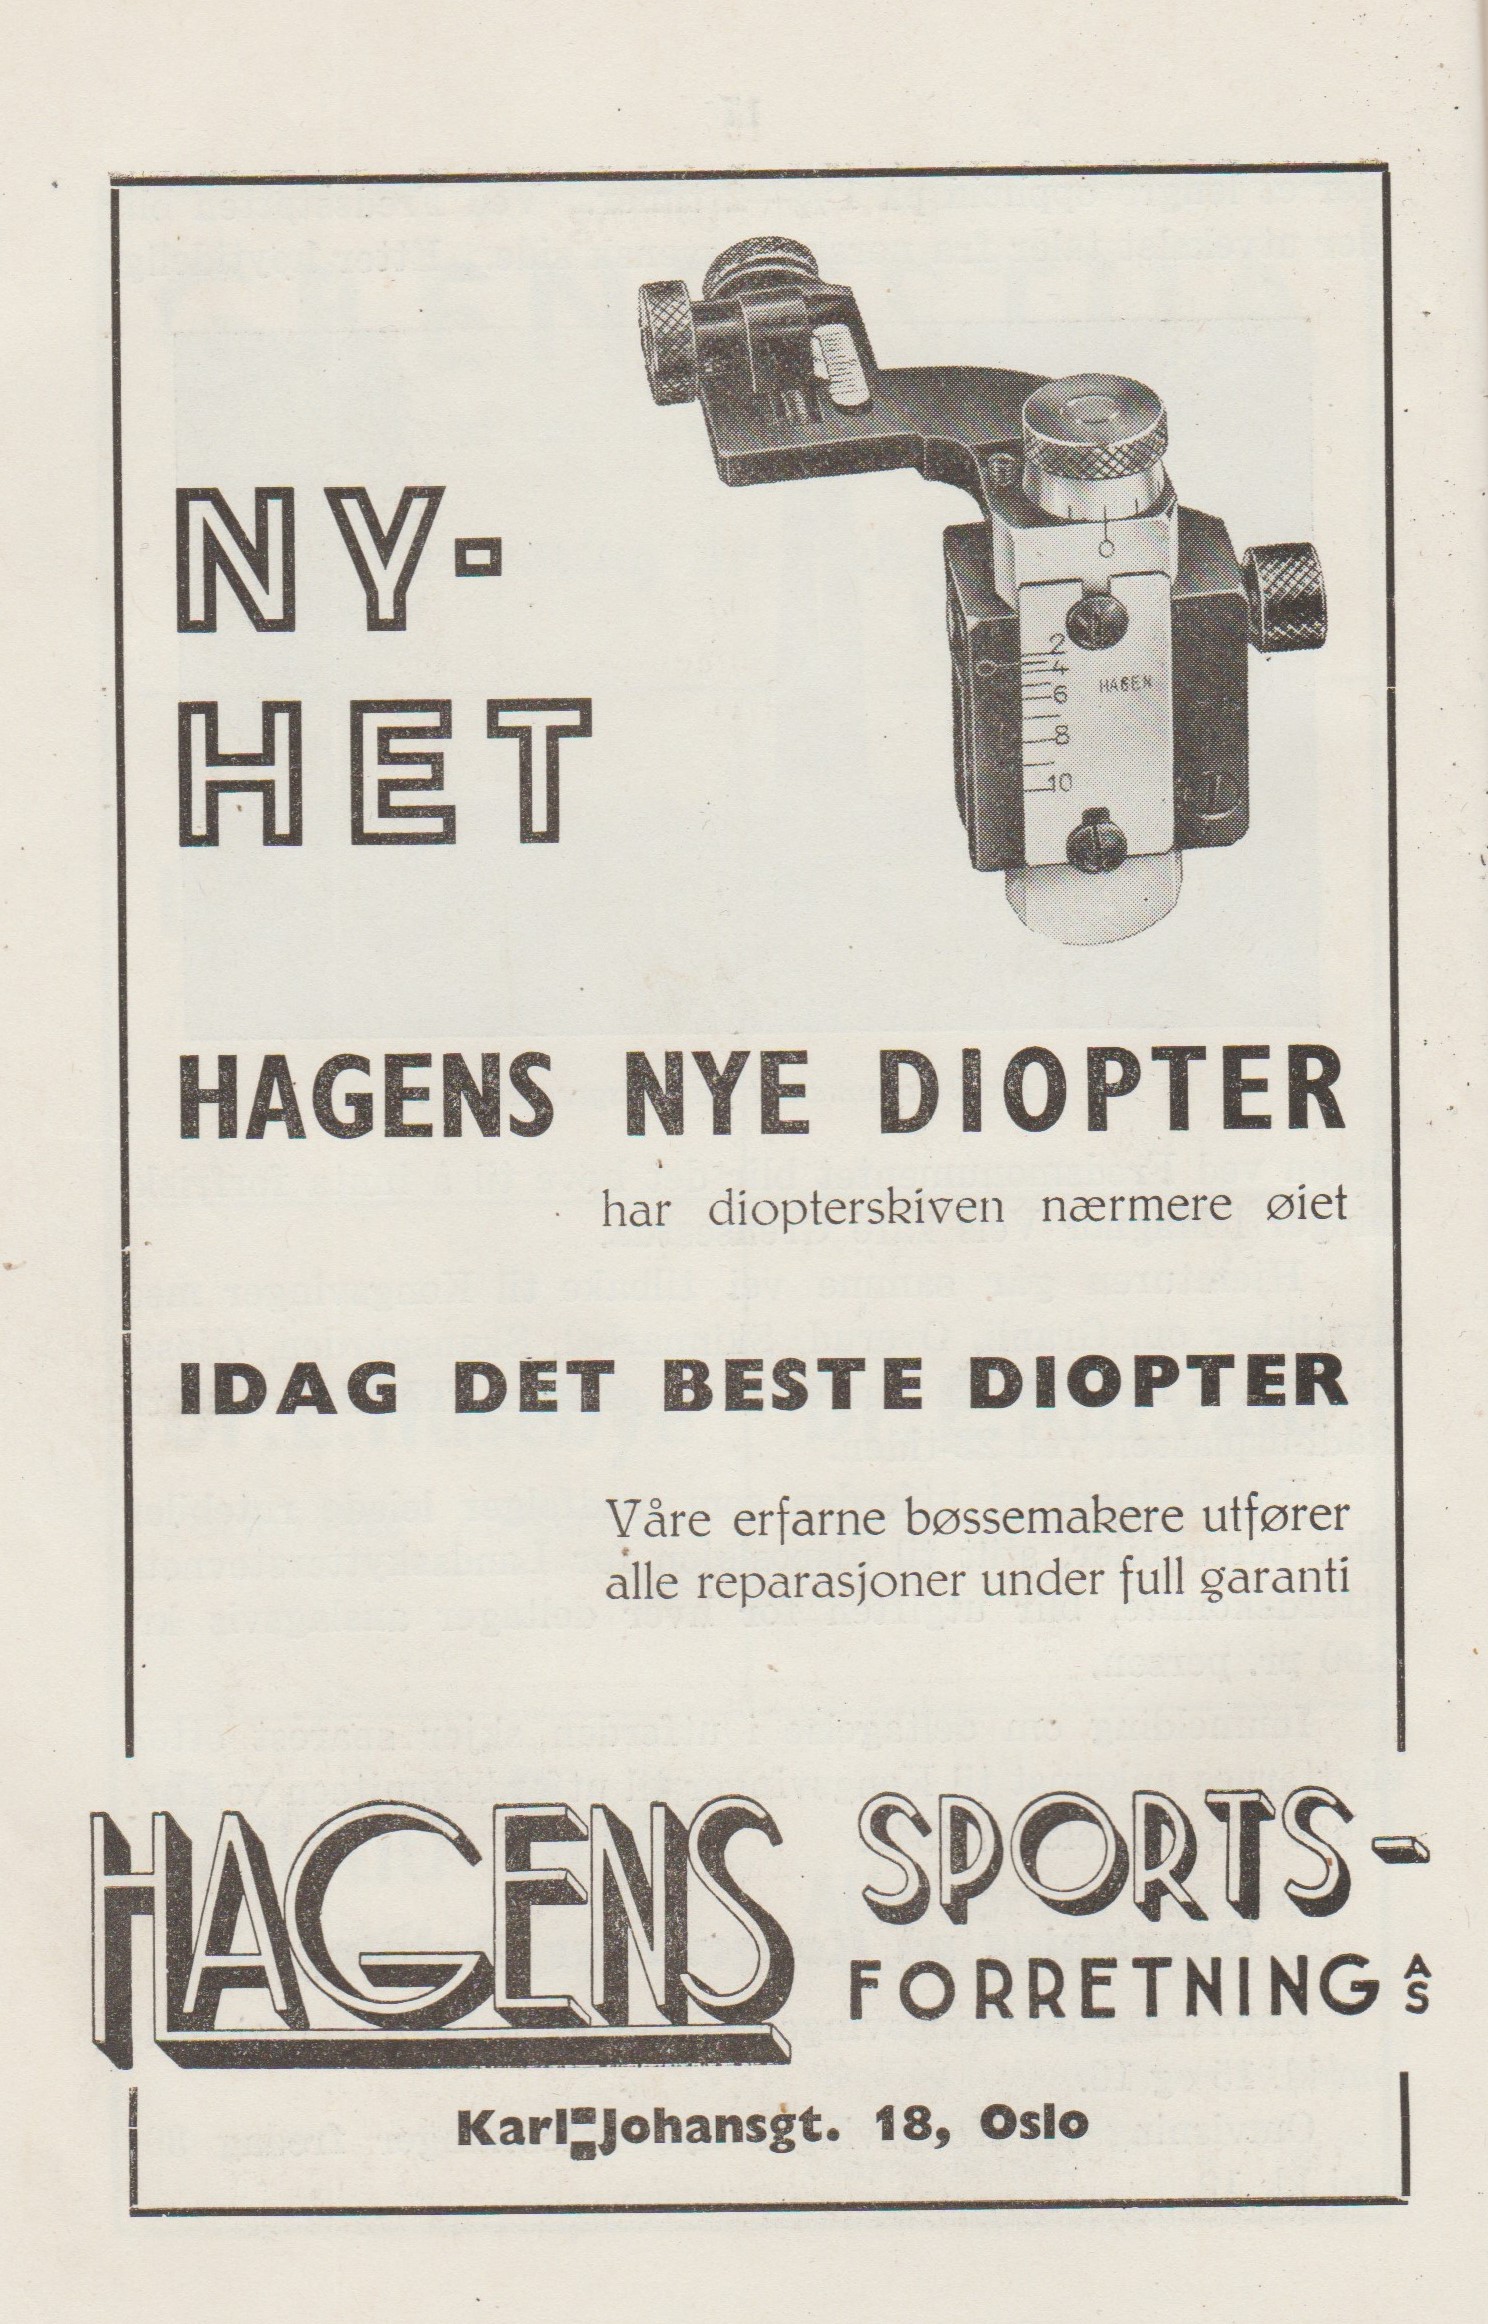 ./guns/utstyr/bilder/Utstyr-Diopter-Hagen-Krag-Program-LS-1939-1.jpg